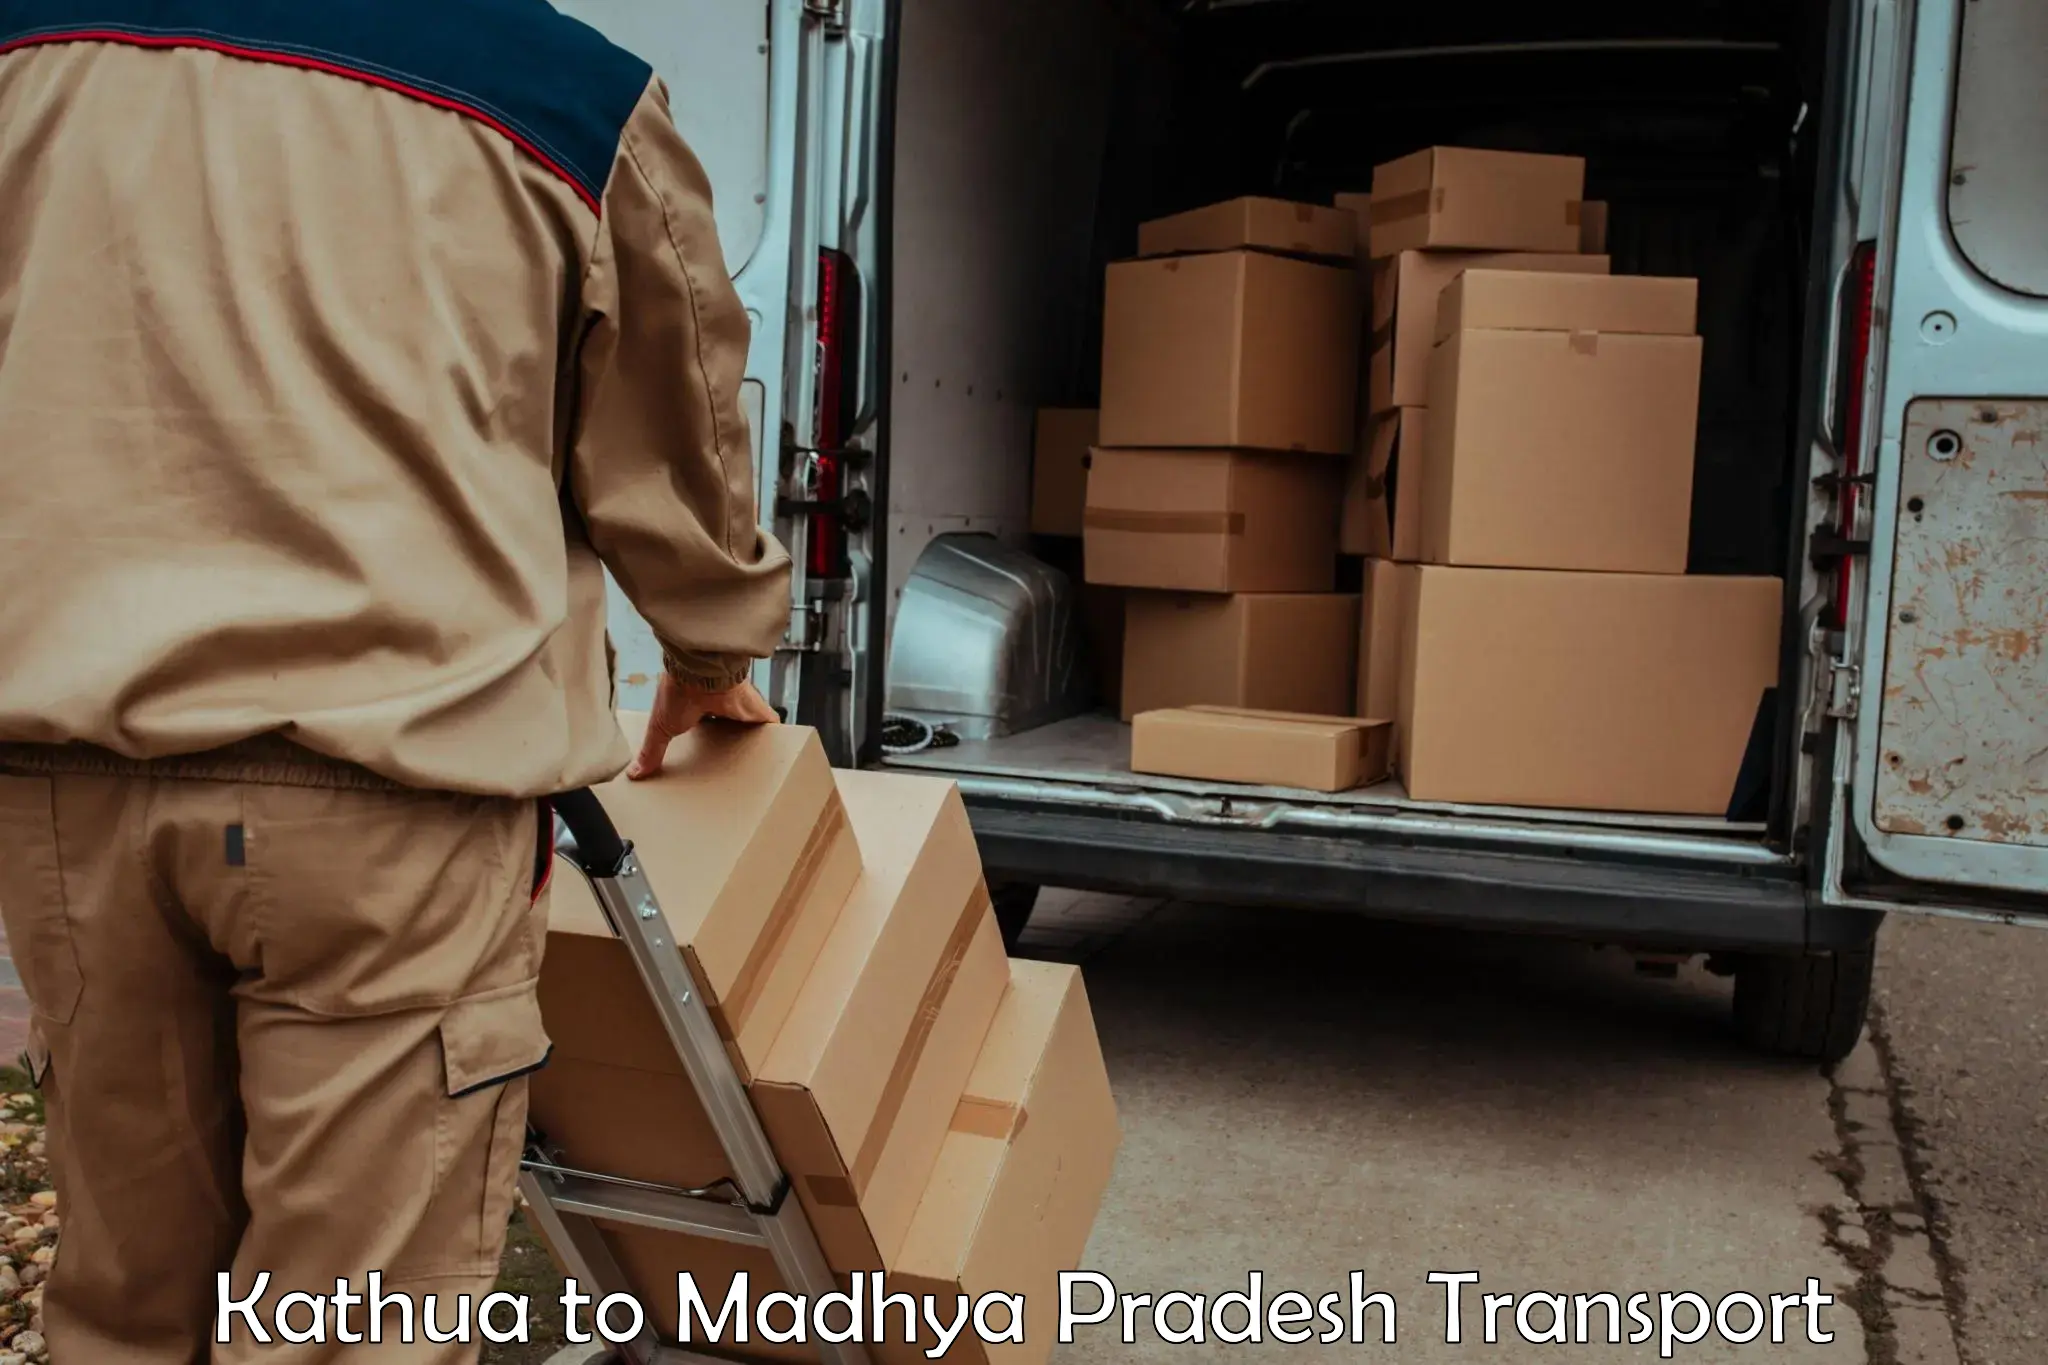 Cargo transportation services Kathua to Jatara